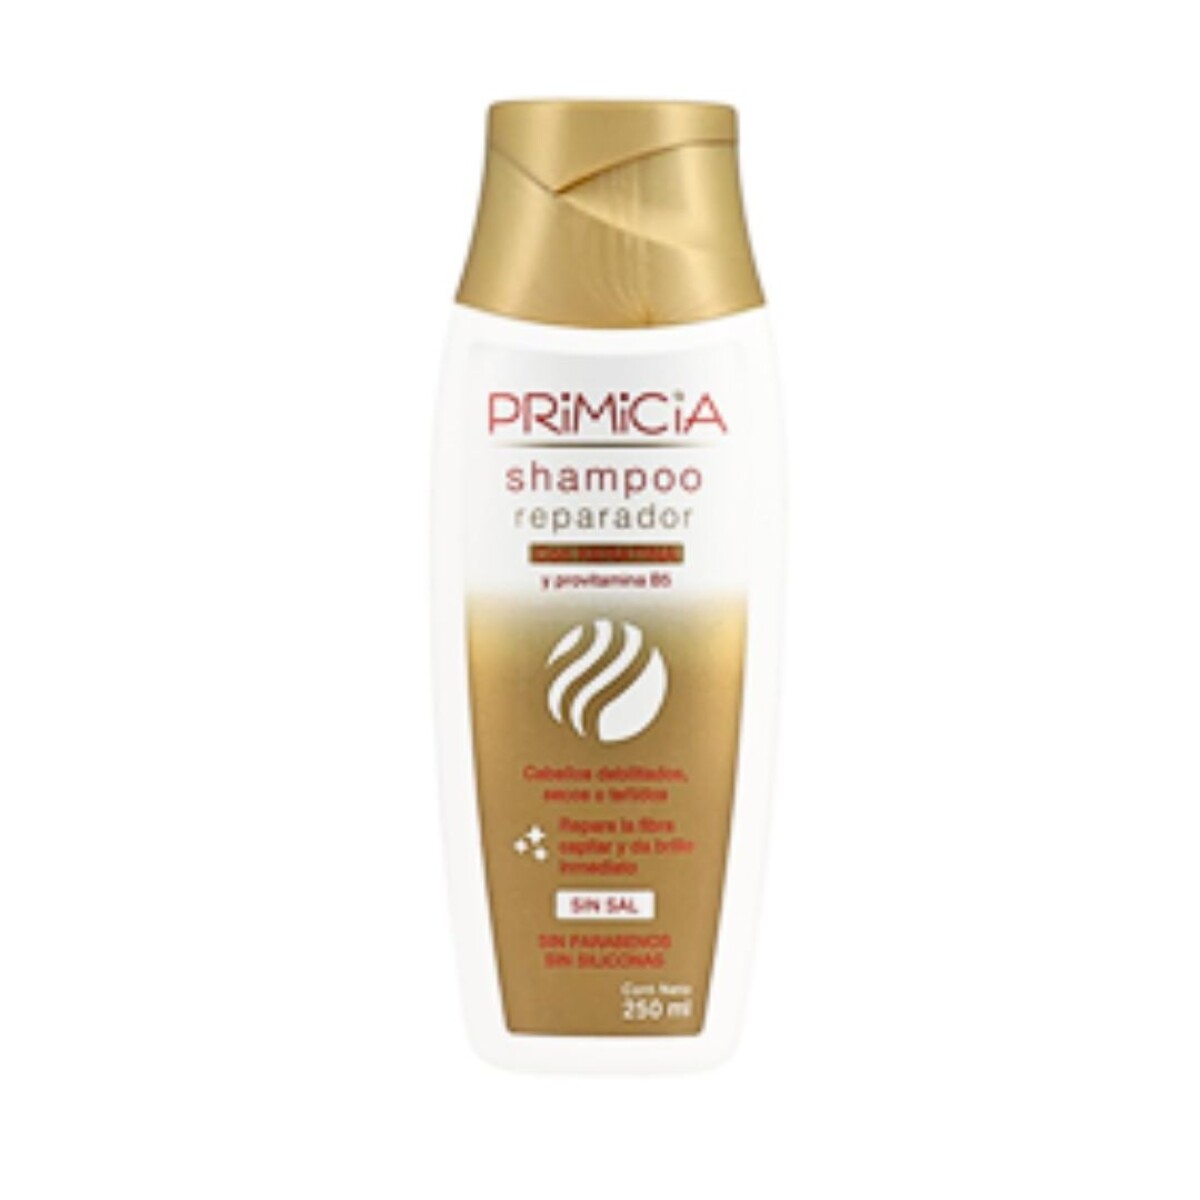 Primicia Shampoo 250ml - Reparador 